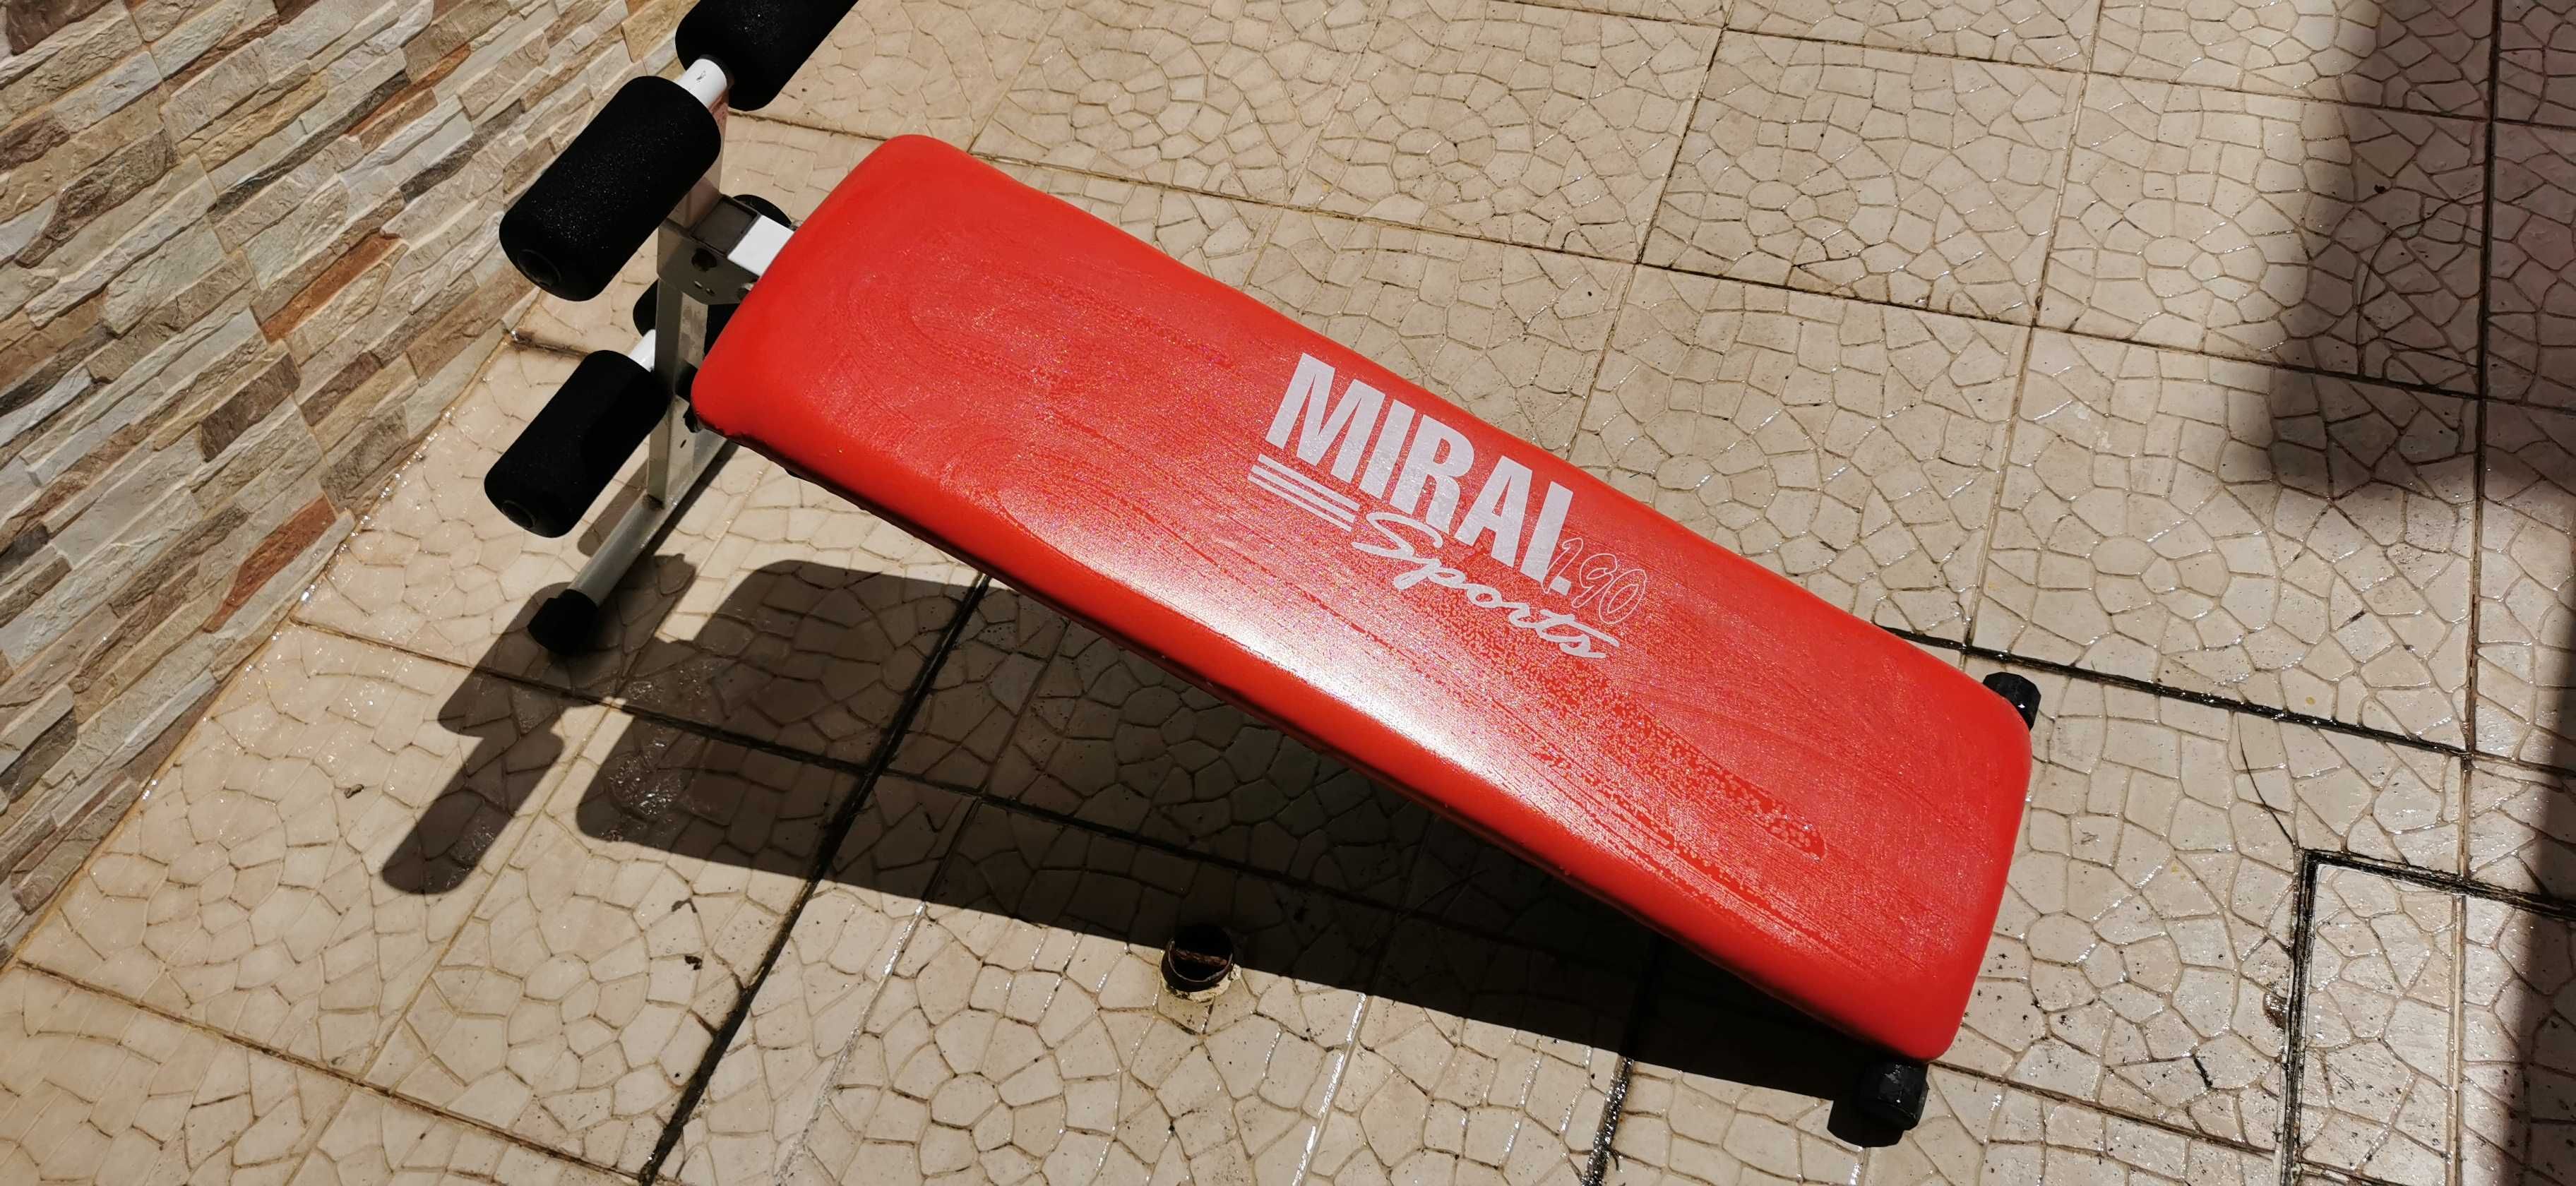 Aparelho de ginástica para abdominais, marca Miral 190 Sports